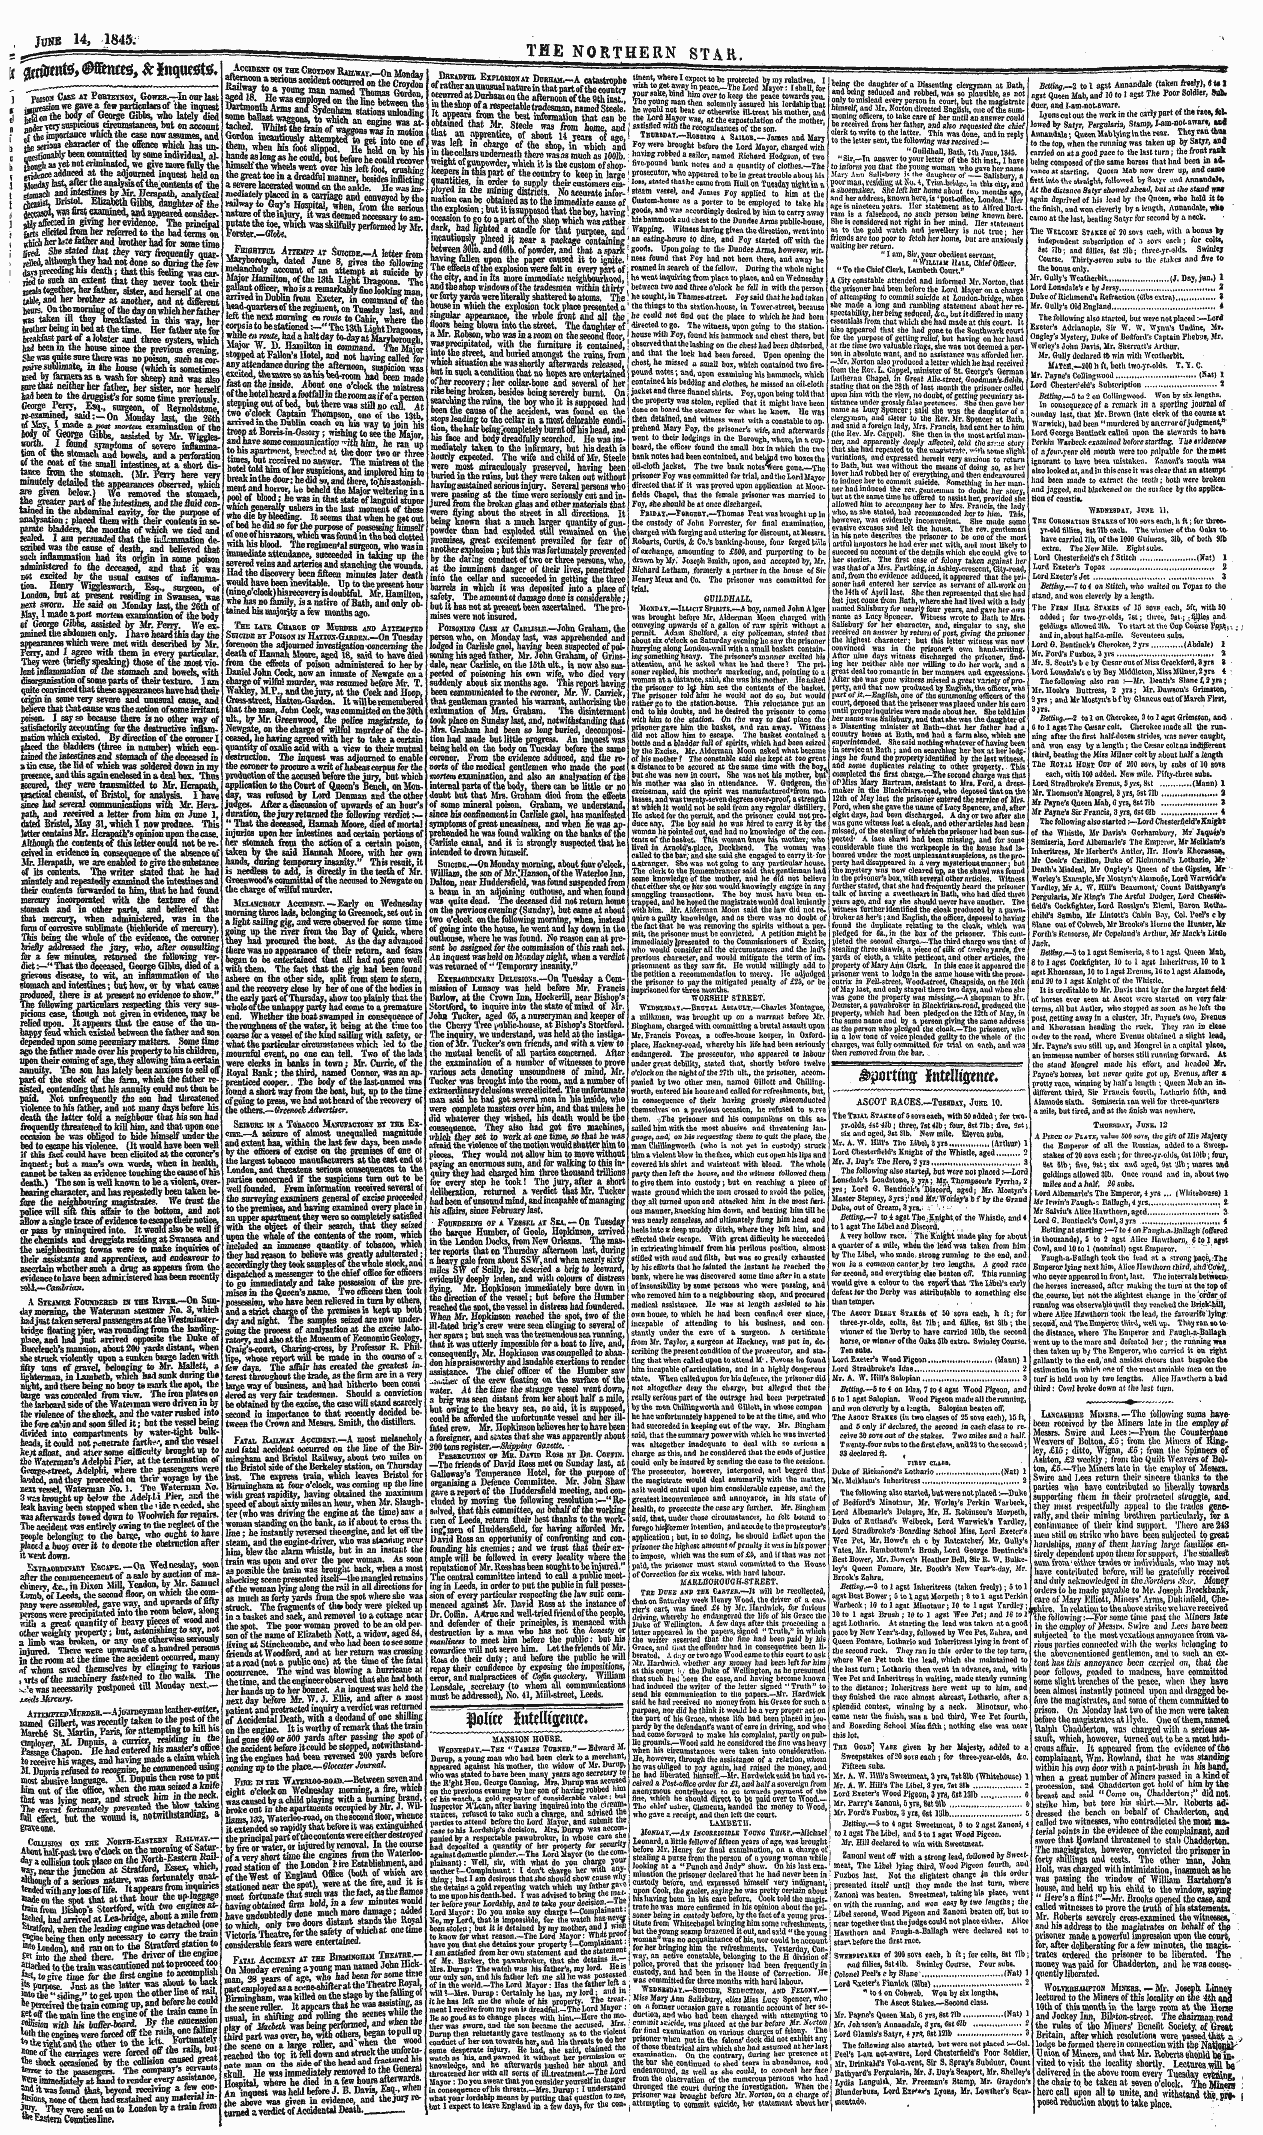 Northern Star (1837-1852): jS F Y, 3rd edition - Gpu'tmo; Hxttllimm